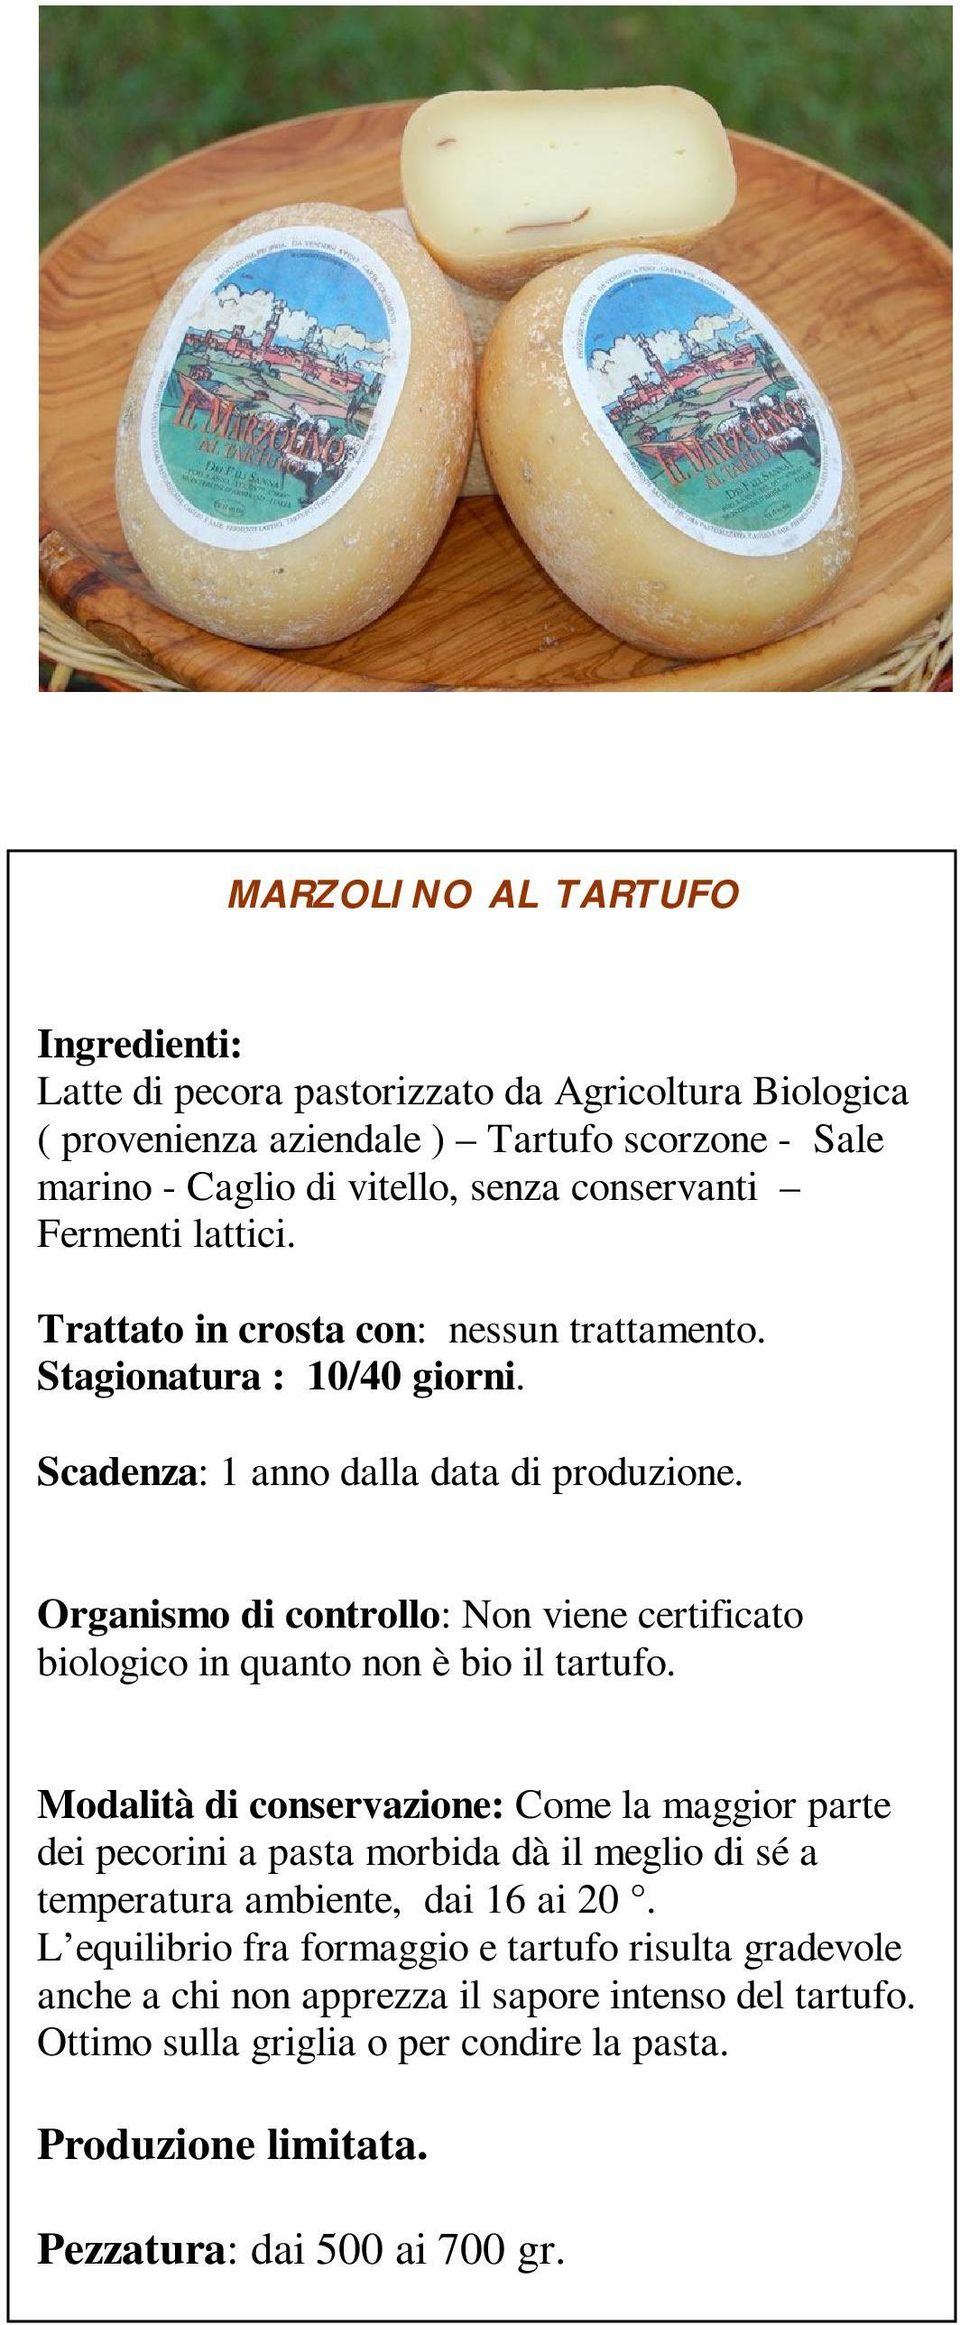 Organismo di controllo: Non viene certificato biologico in quanto non è bio il tartufo.